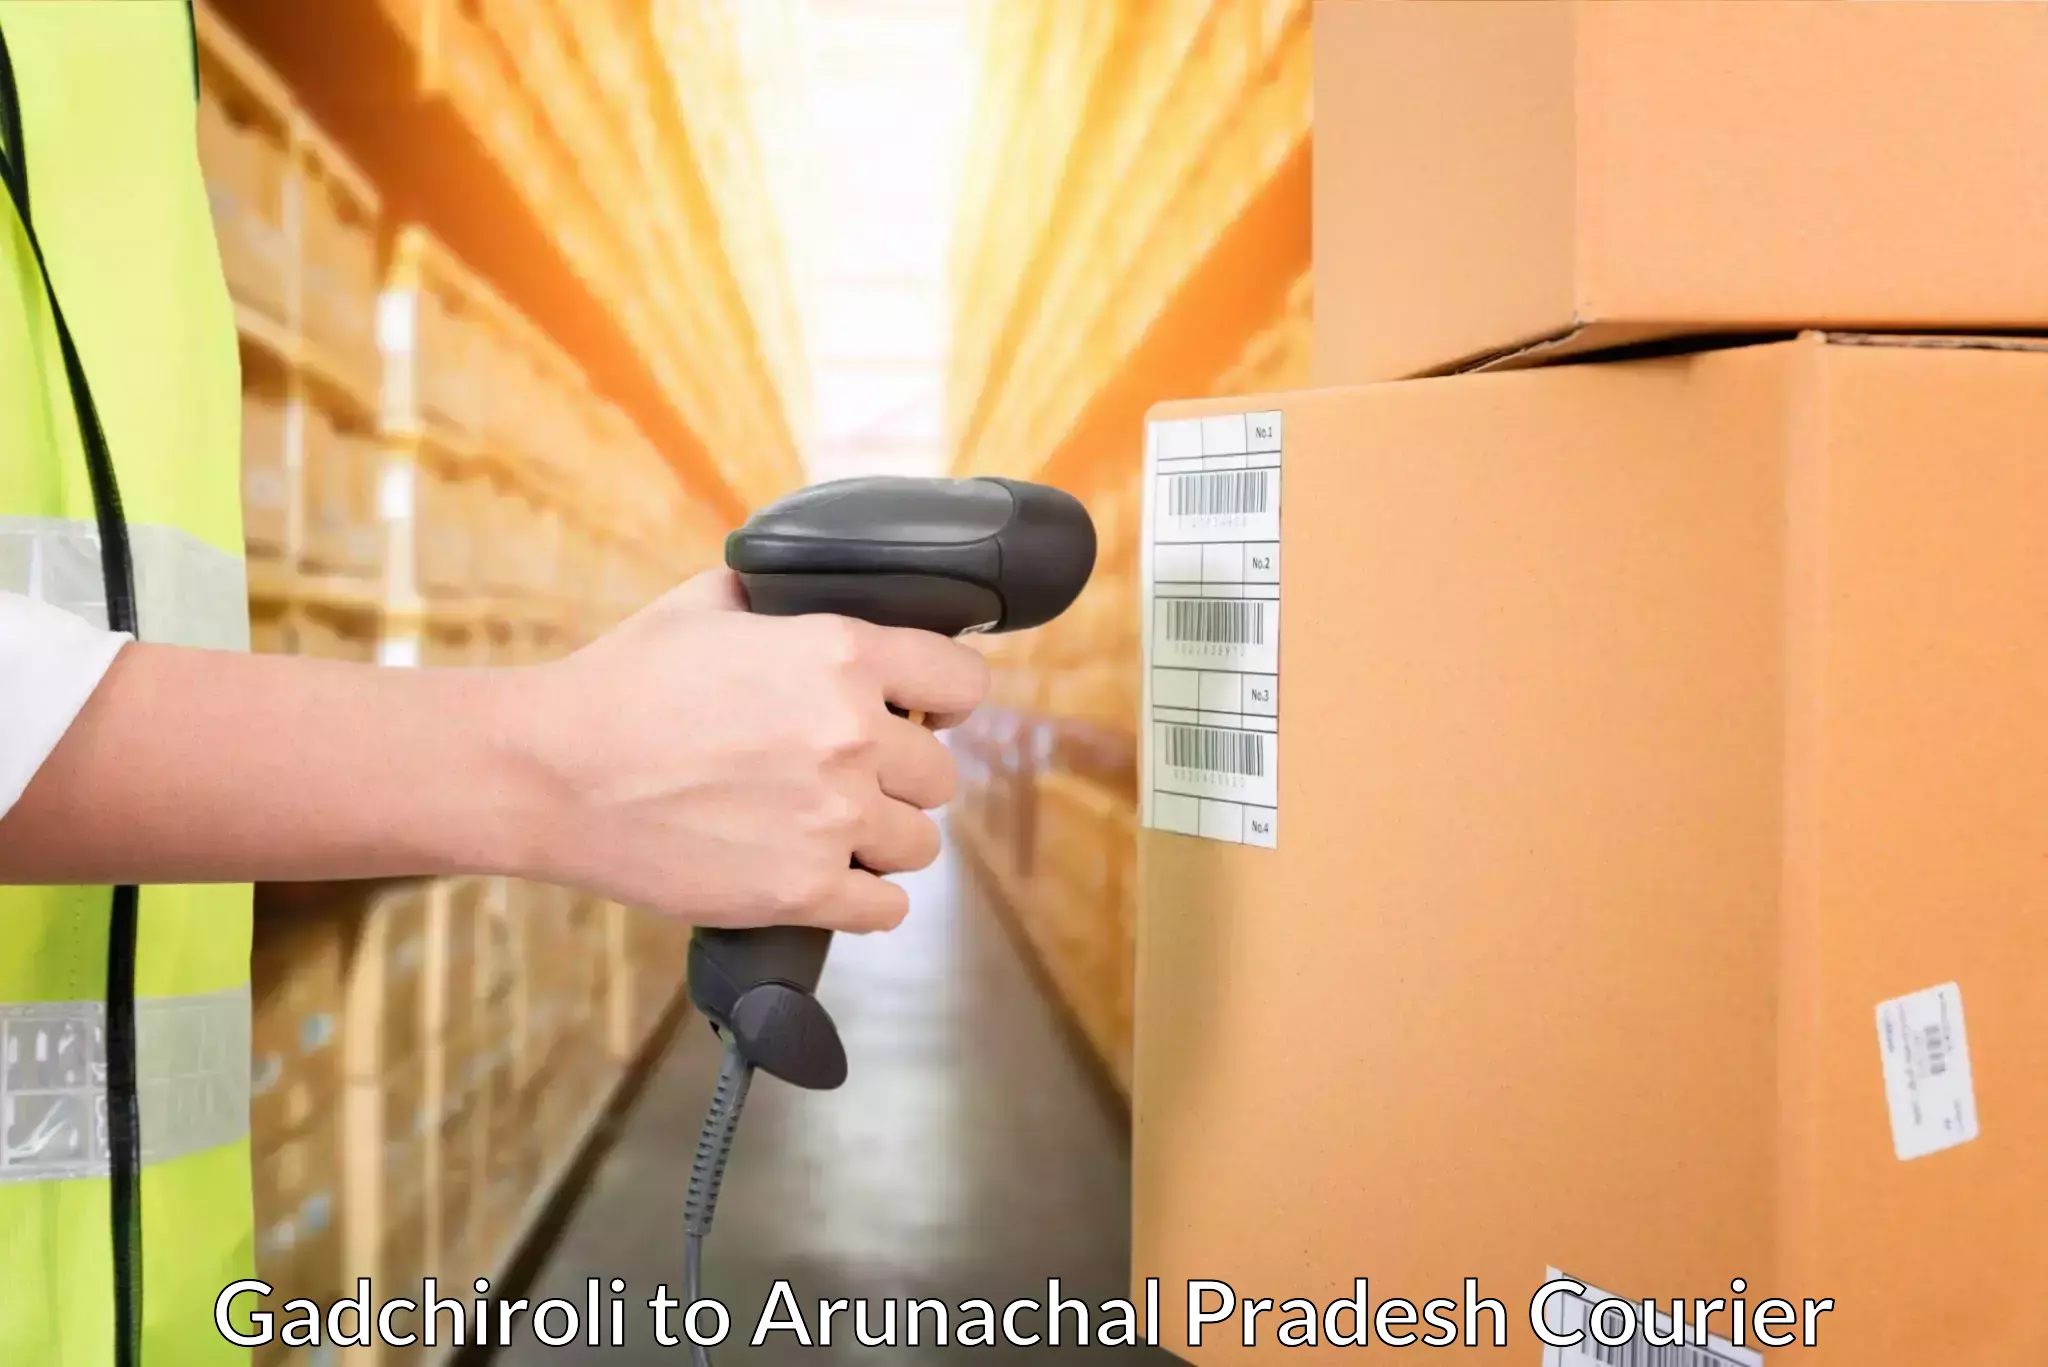 Efficient parcel tracking in Gadchiroli to Arunachal Pradesh